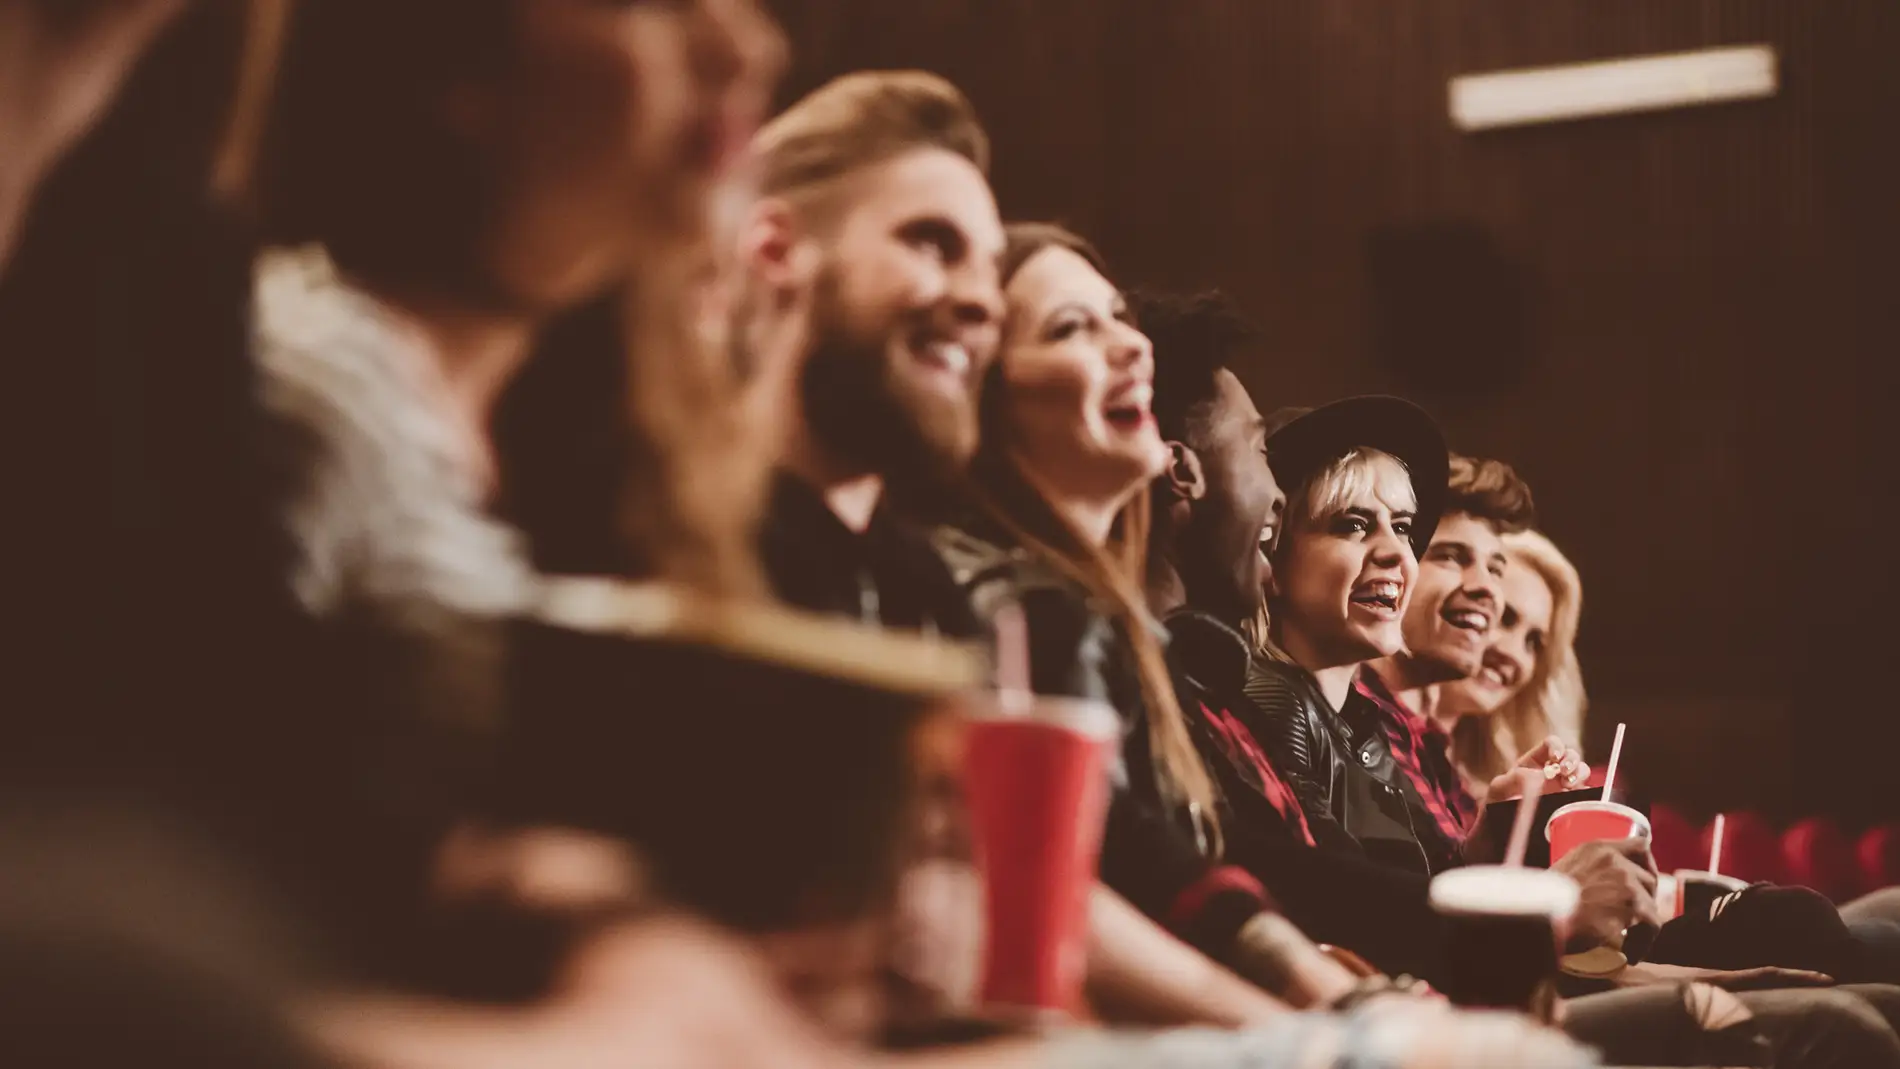 Grupo de amigos en una sala de cine